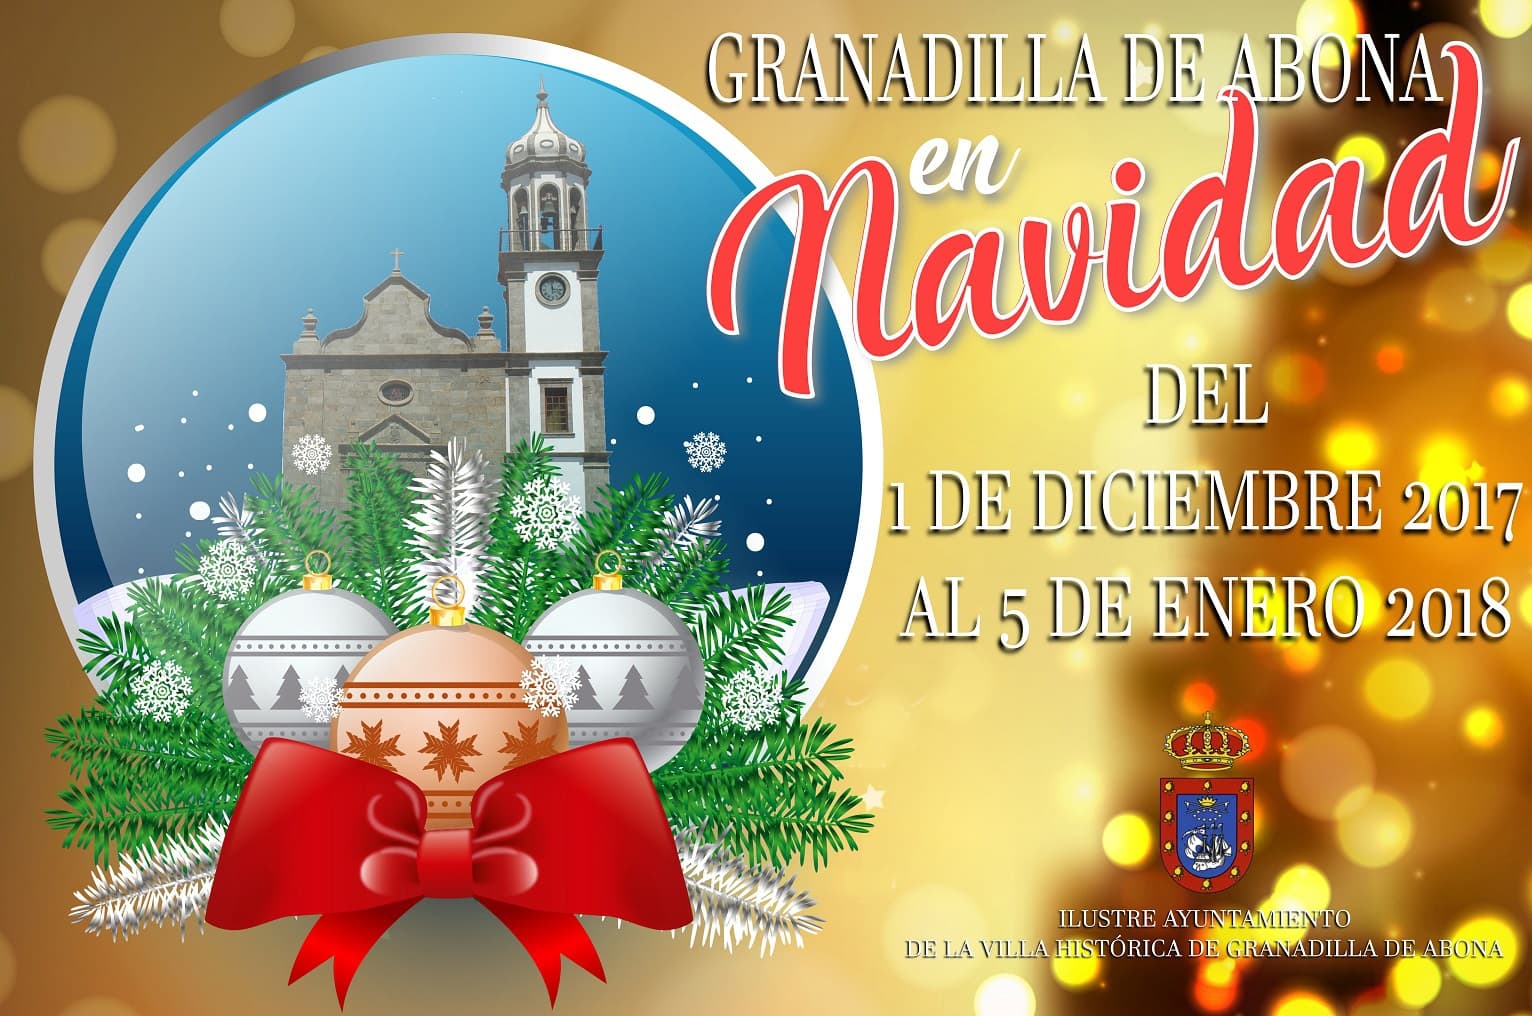 Estas tradicionales Fiestas (Navidad, Fin de Año y Reyes) en Granadilla de Abona